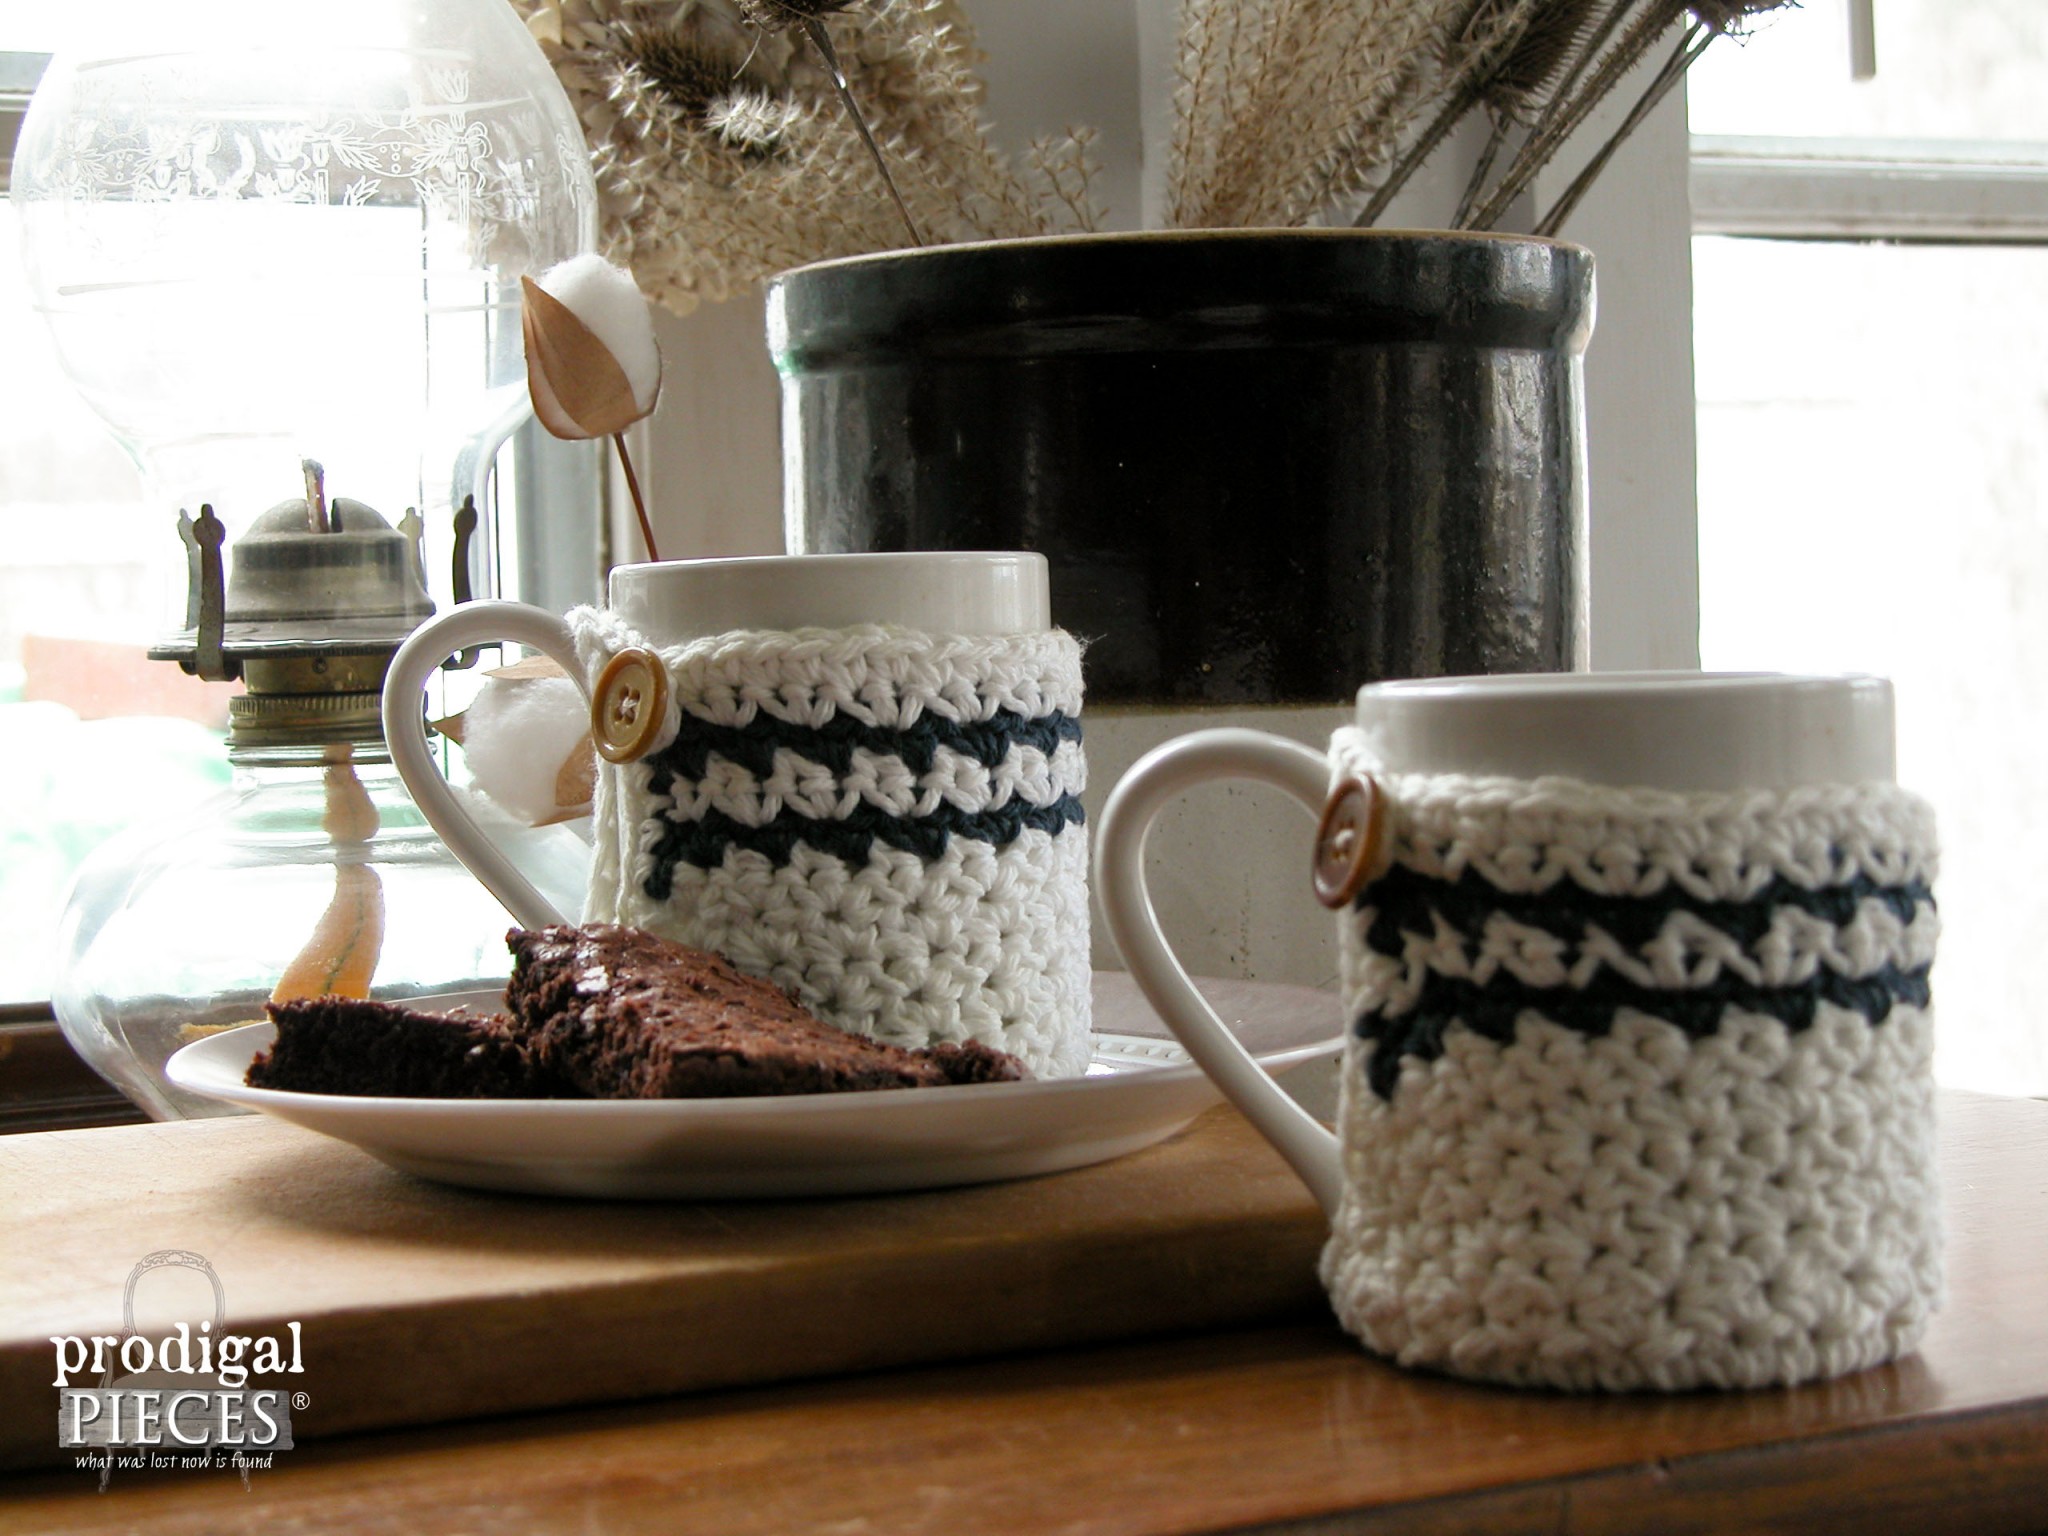 Handmade Crochet Mug Cozy for Top 10 of 2015 | Prodigal Pieces | prodigalpieces.com